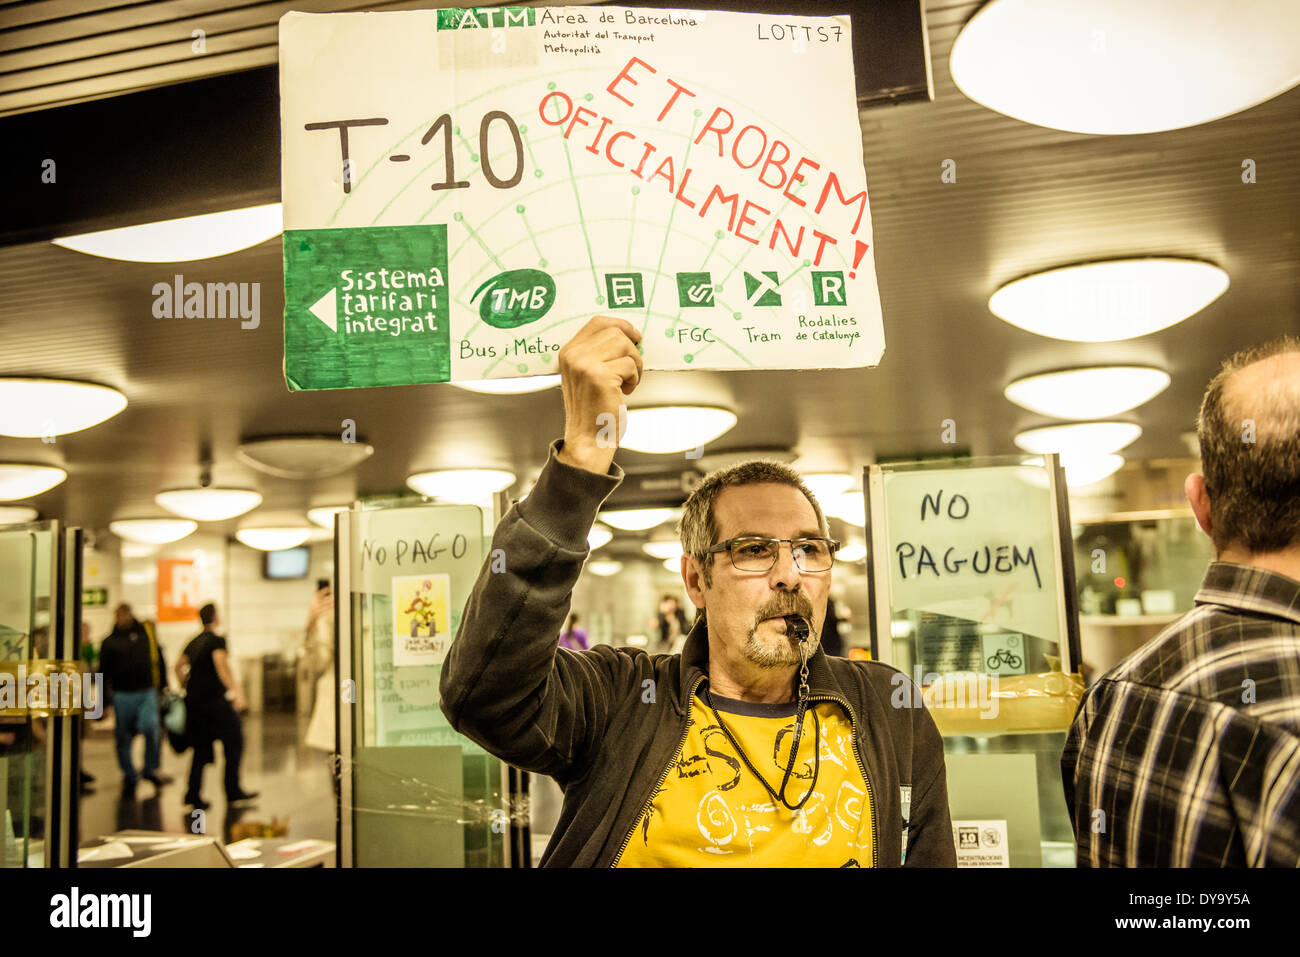 Barcelone, Espagne. 10 avril 2014 : Un militant tient son placard pendant une manifestation contre le faux billet pour les transports publics de Barcelone : Crédit matthi/Alamy Live News Banque D'Images